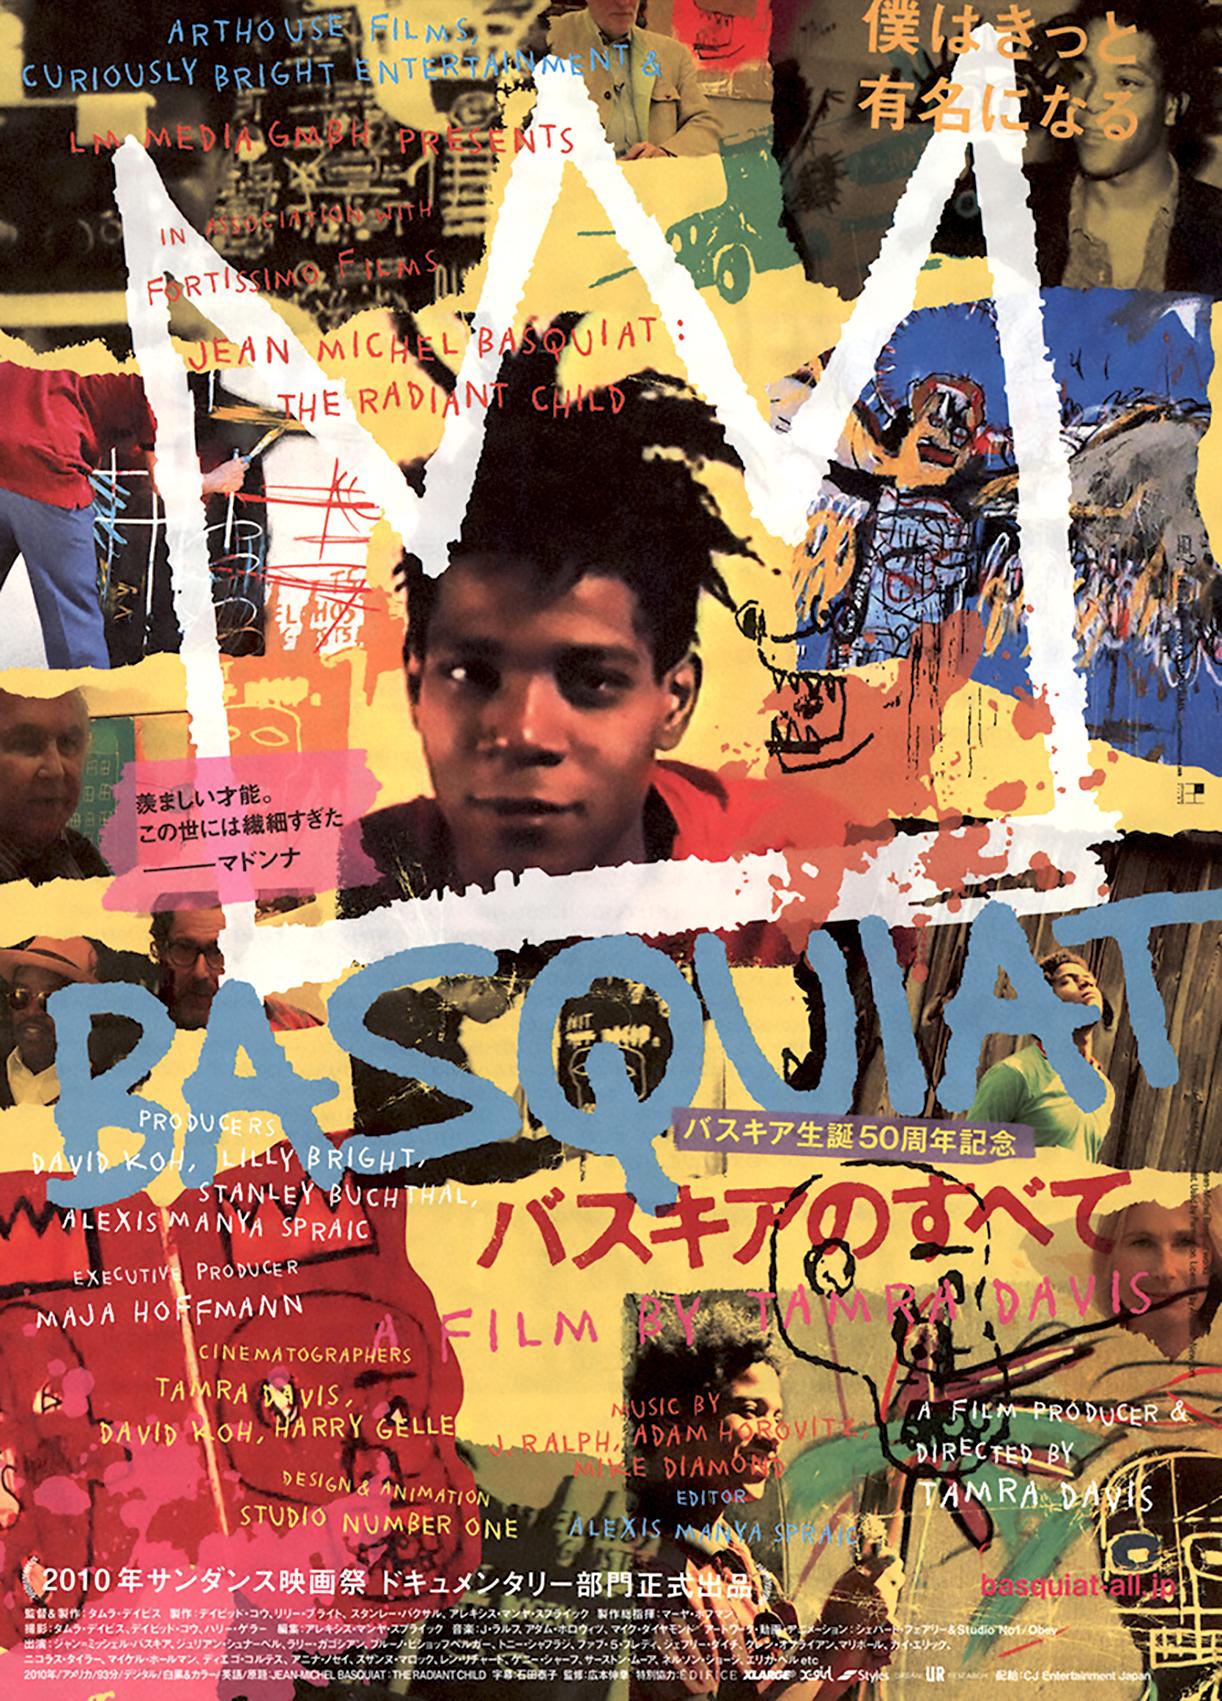 Basquiat-Filmplakate: Satz von 4 Werken:
Vintage Basquiat Japan Filmplakate/Flyer; bestehend aus zwei Plakaten aus dem Dokumentarfilm 